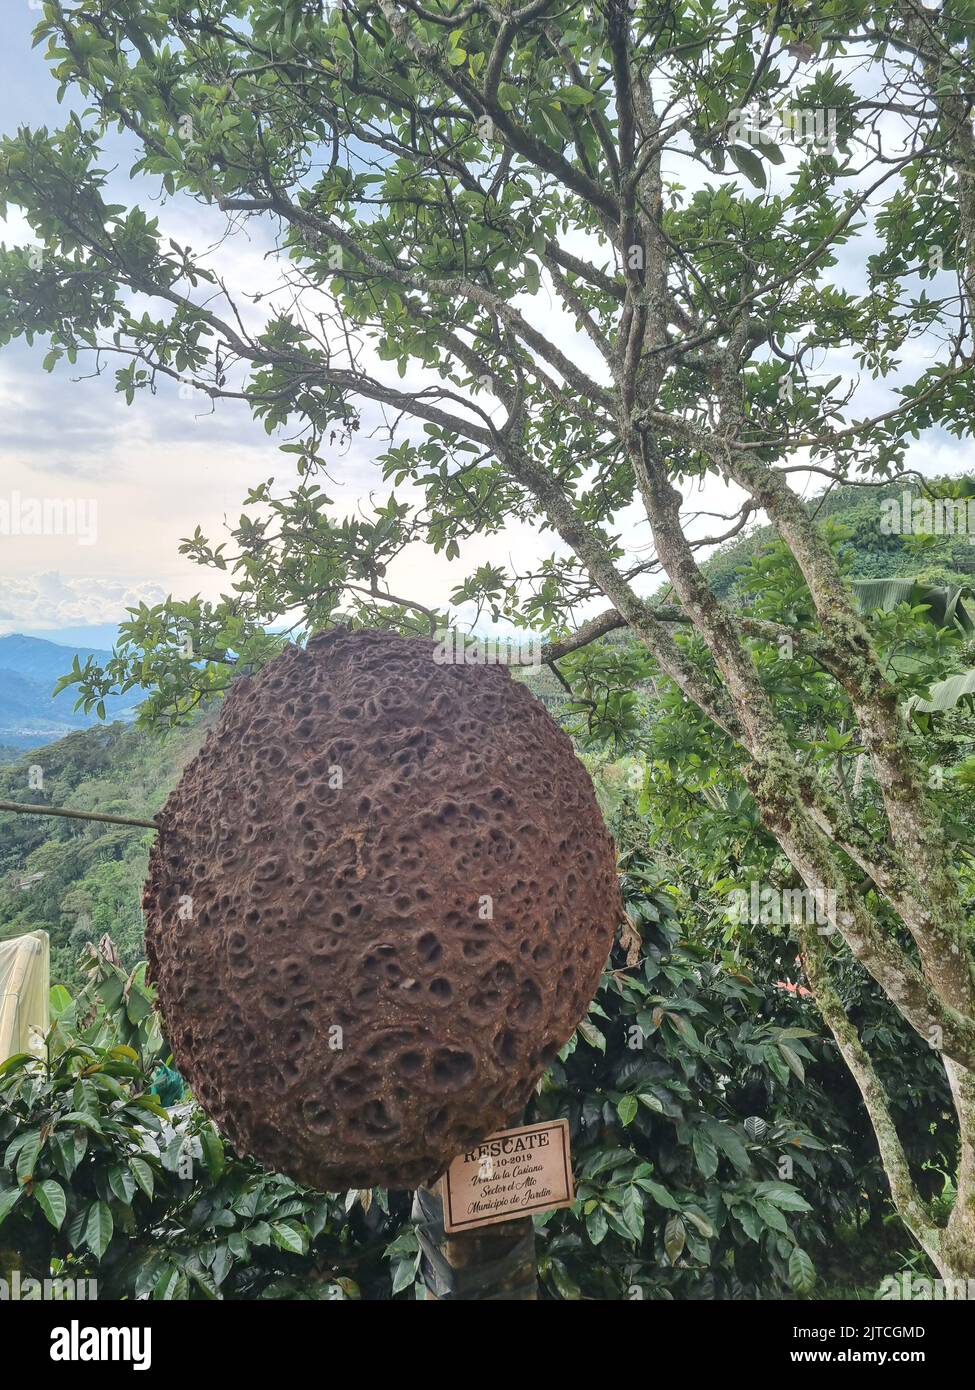 Paesaggi incredibili di Jardin Colombia vista della Colombia Foto Stock